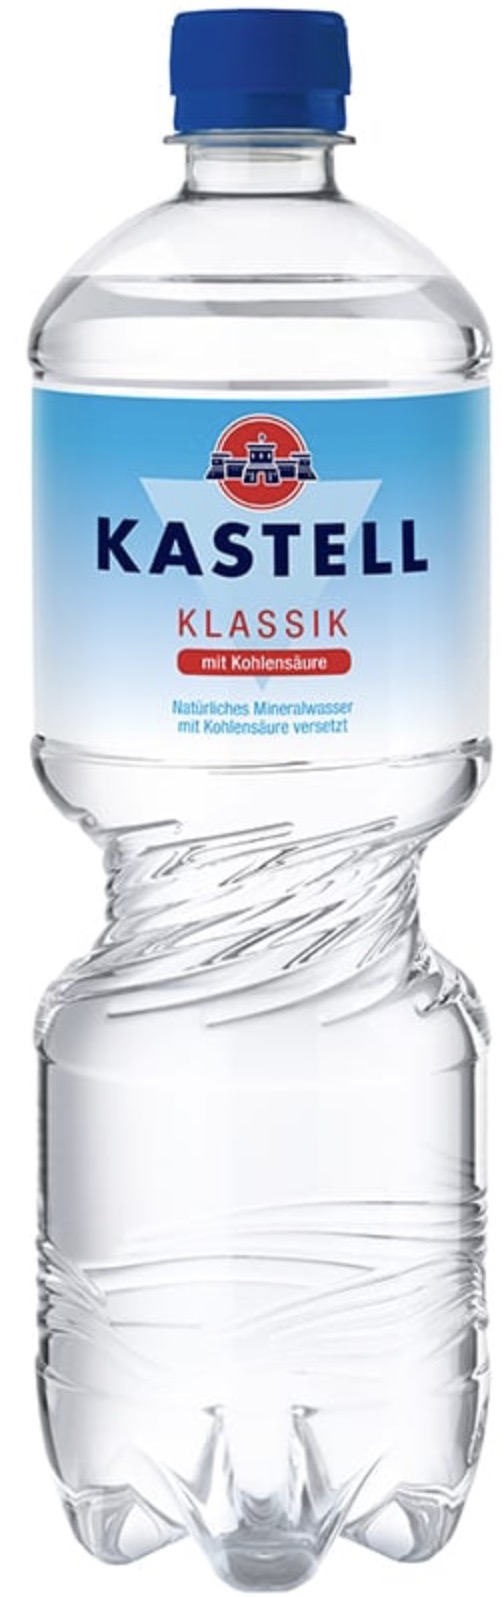 Kastell Mineralwasser Klassik 1,0L EINWEG